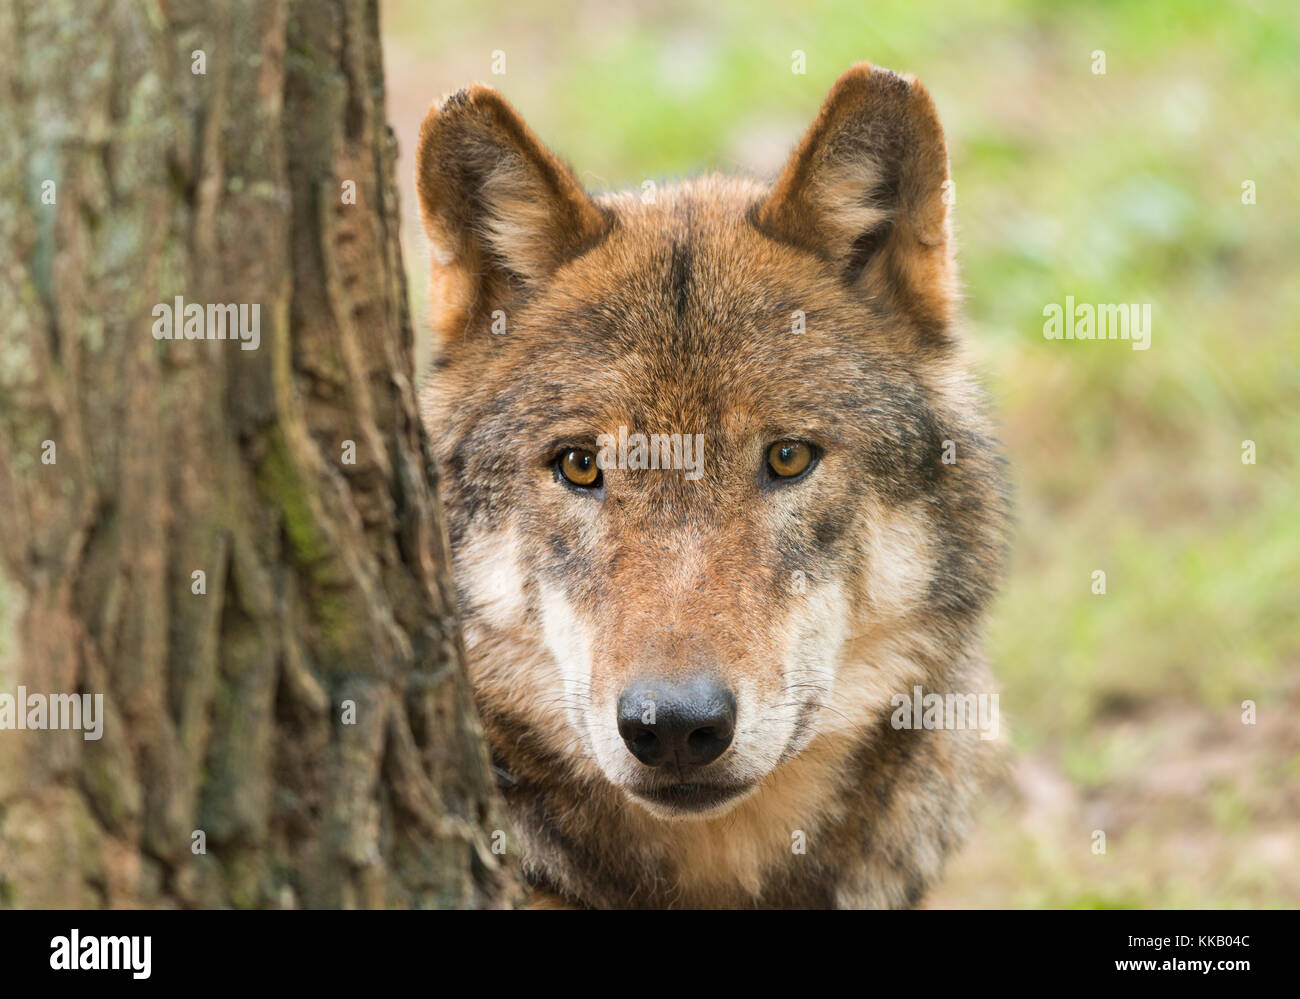 Le loup (canis lupus) derrière le tronc de l'arbre, portrait, captive, Allemagne Banque D'Images